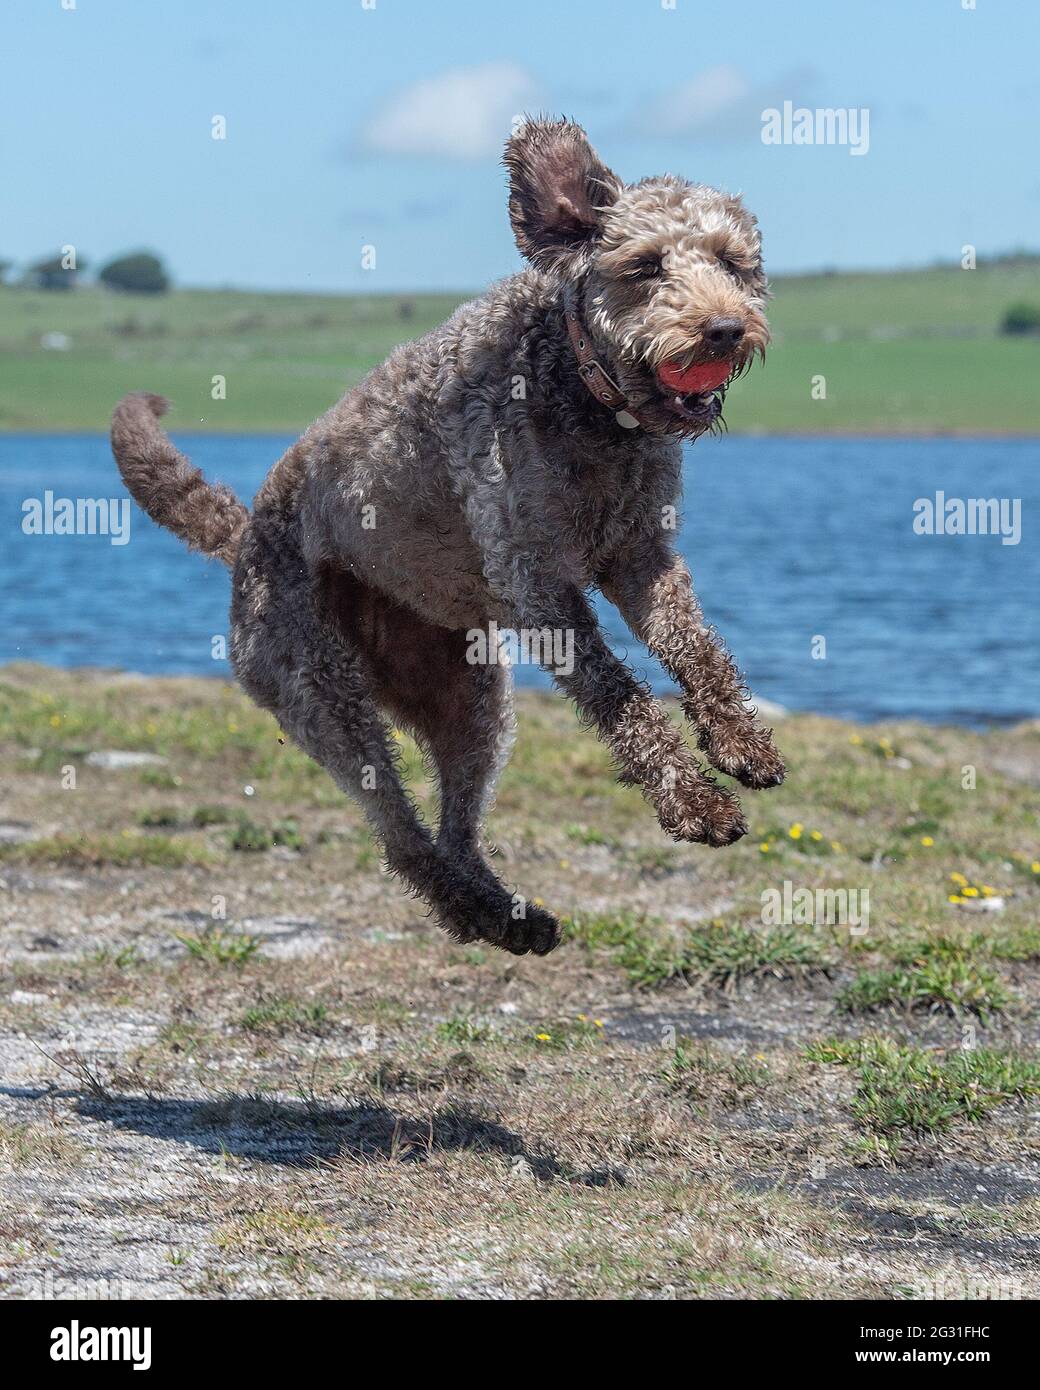 perro de labradoodle atrapando una bola a mitad del aire Foto de stock